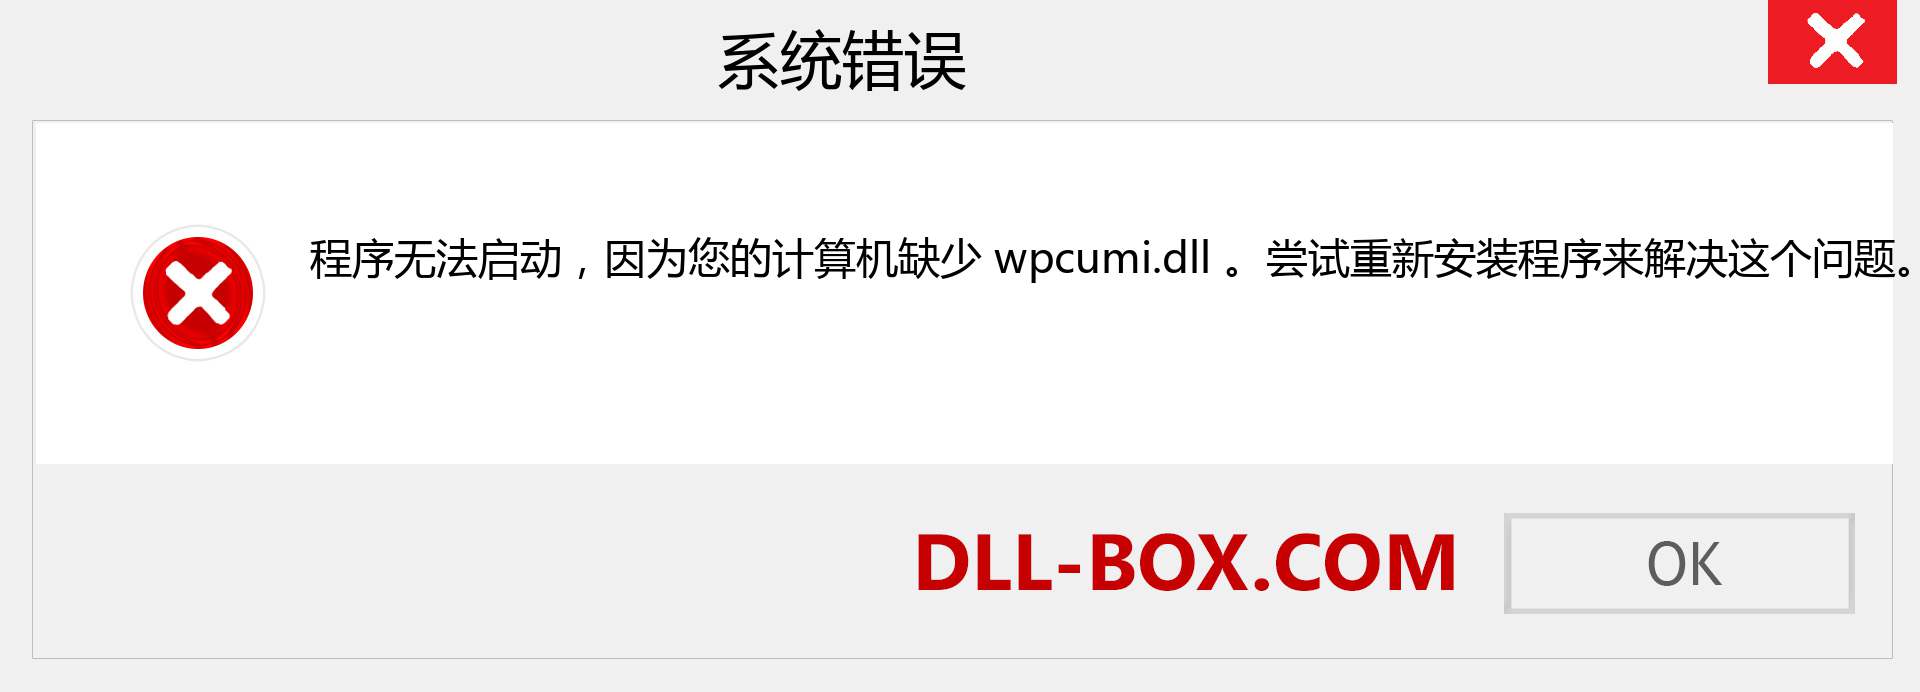 wpcumi.dll 文件丢失？。 适用于 Windows 7、8、10 的下载 - 修复 Windows、照片、图像上的 wpcumi dll 丢失错误